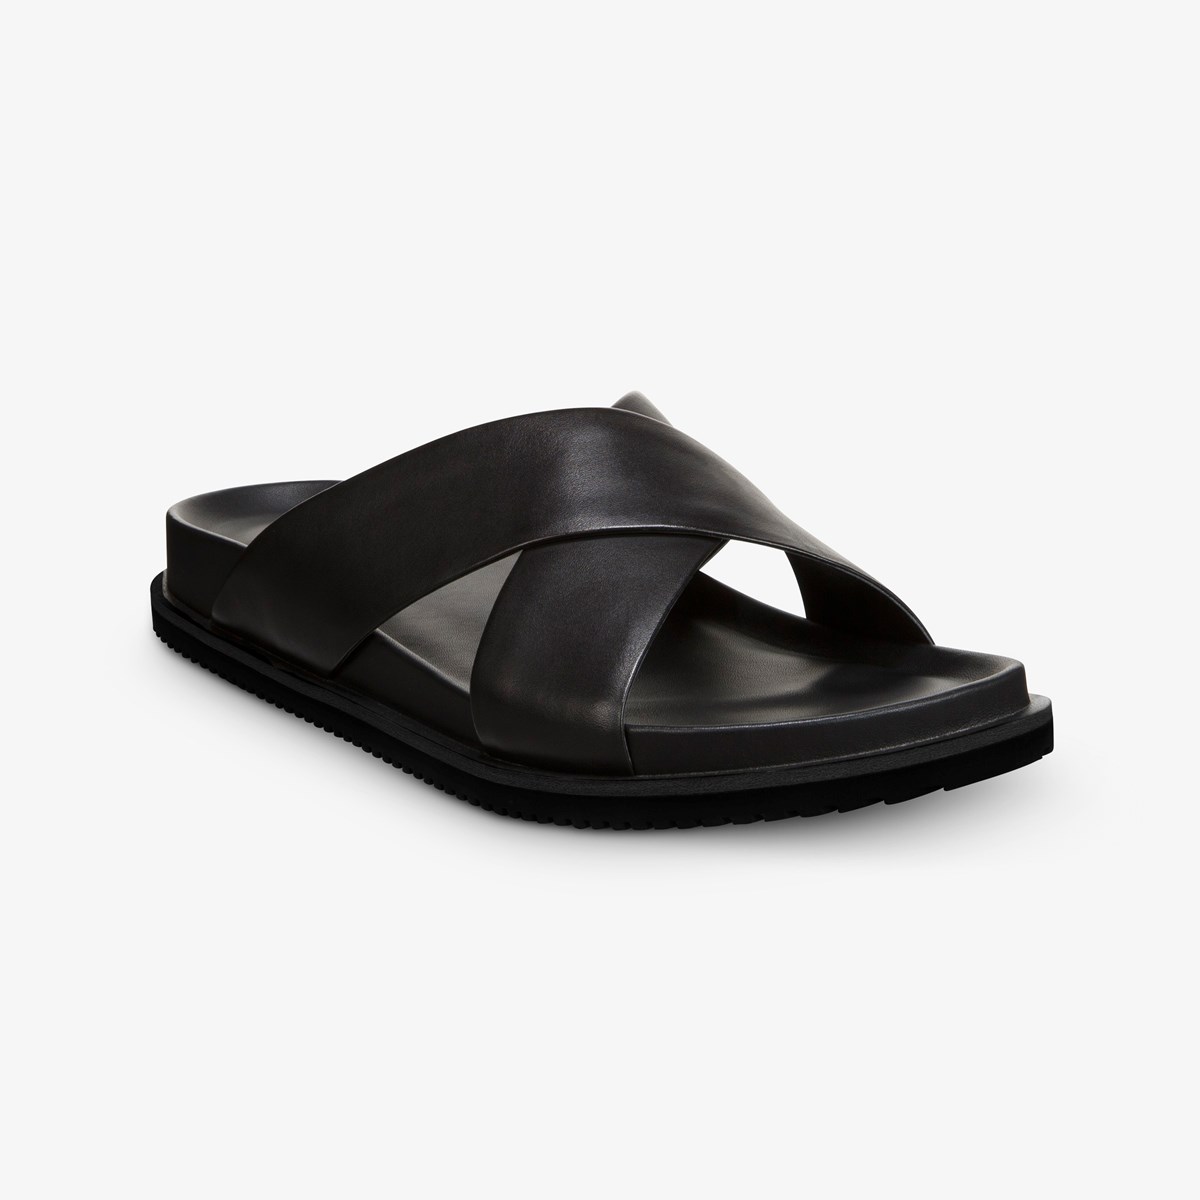 Del Mar Sandal | Men's Sandals | Allen Edmonds